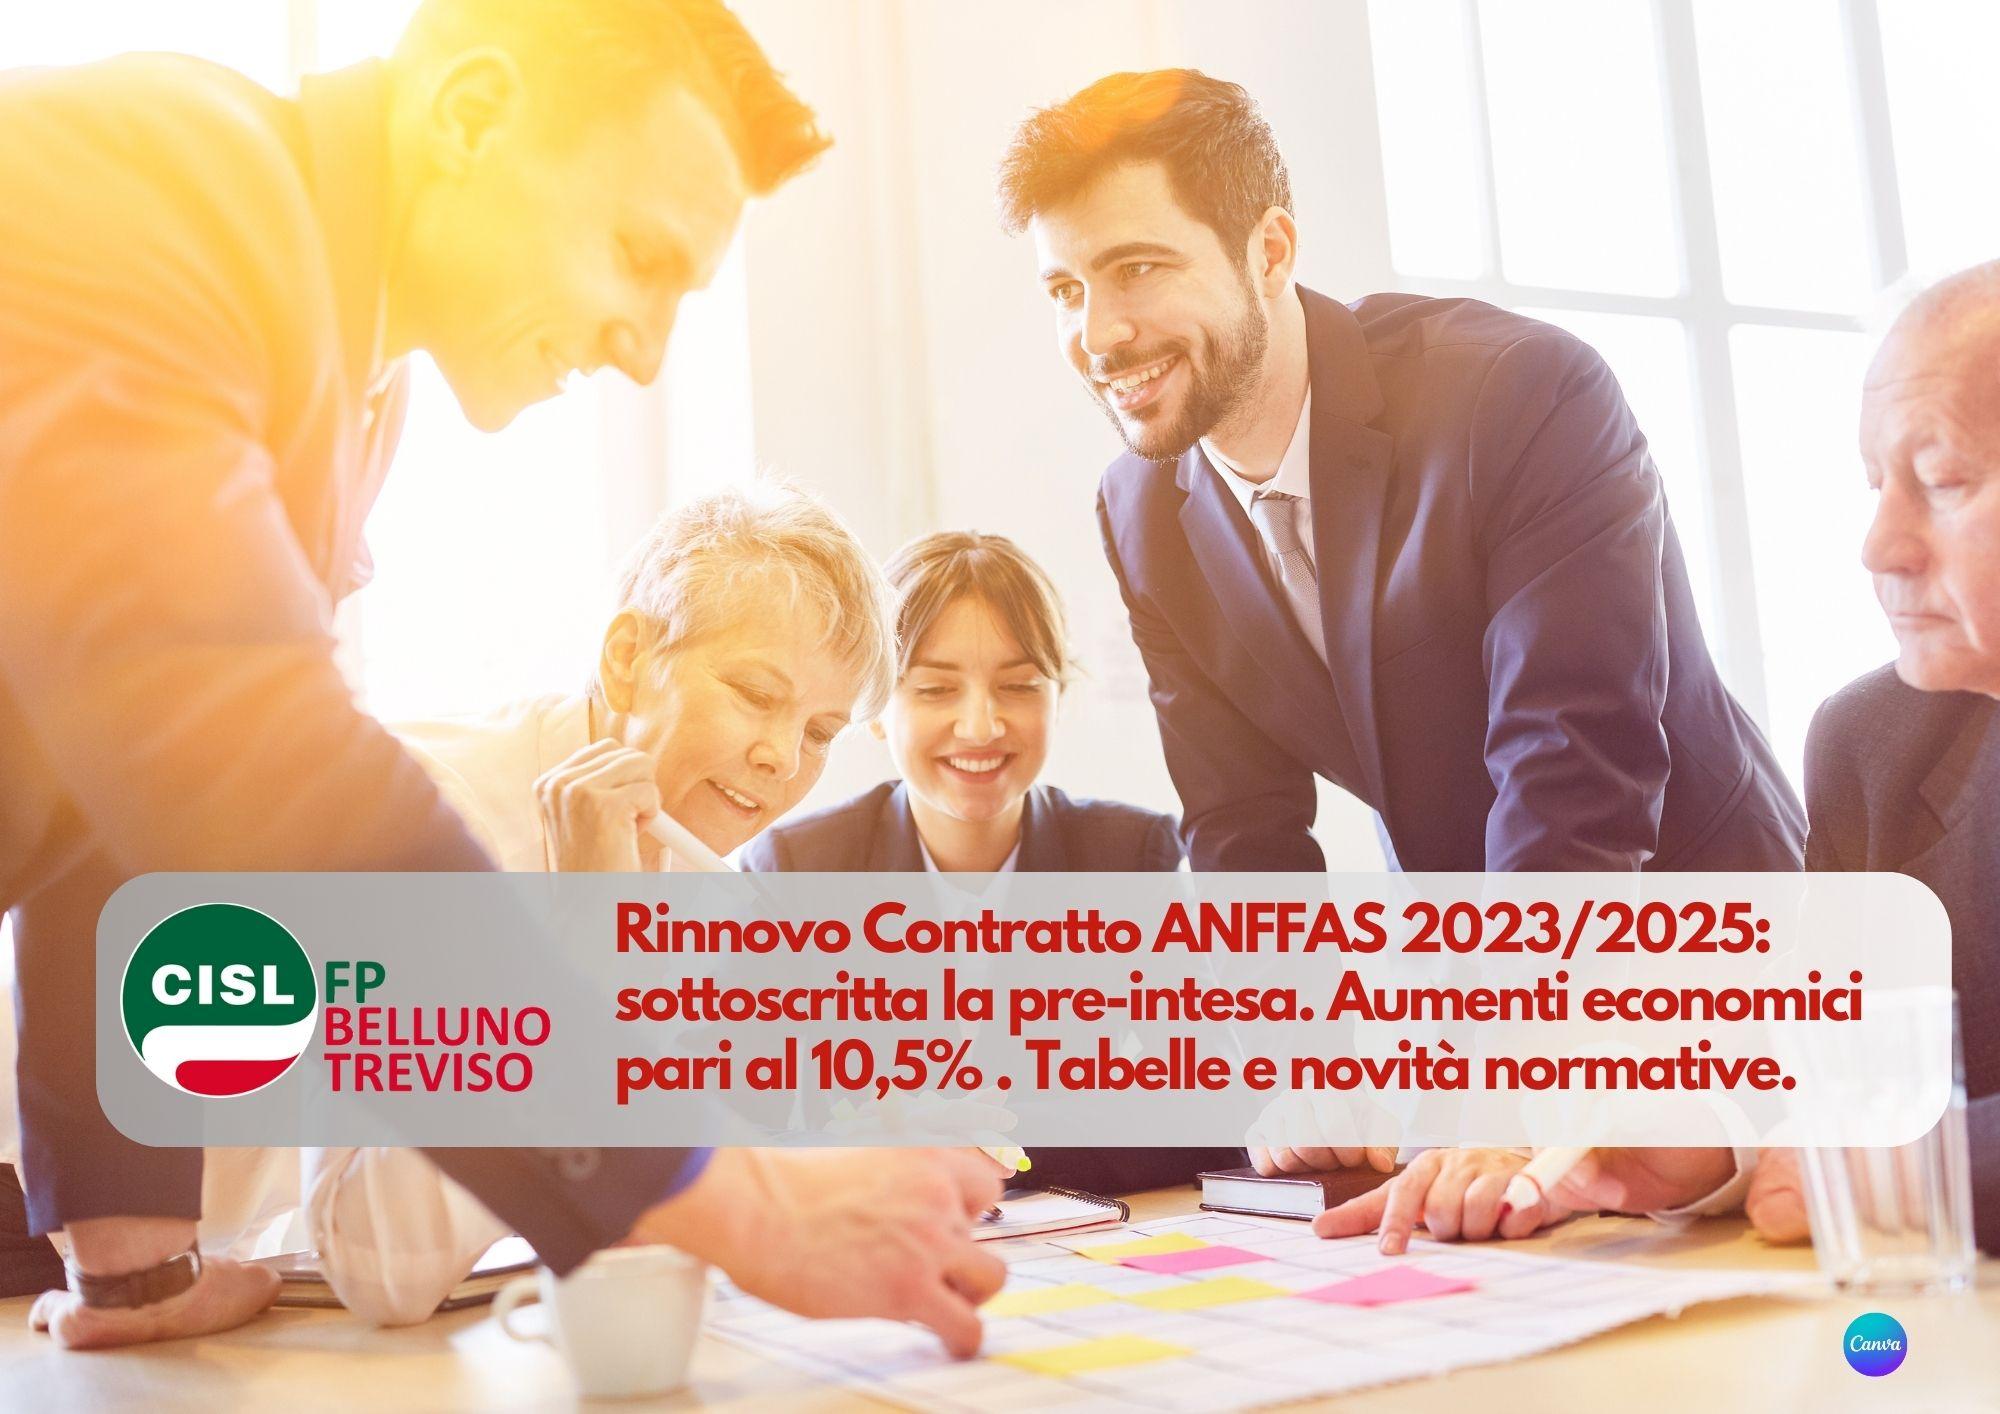 CISL FP Belluno Treviso. Rinnovo Contratto ANFFAS 2023/2025: sottoscritta la pre-intesa. I dettagli